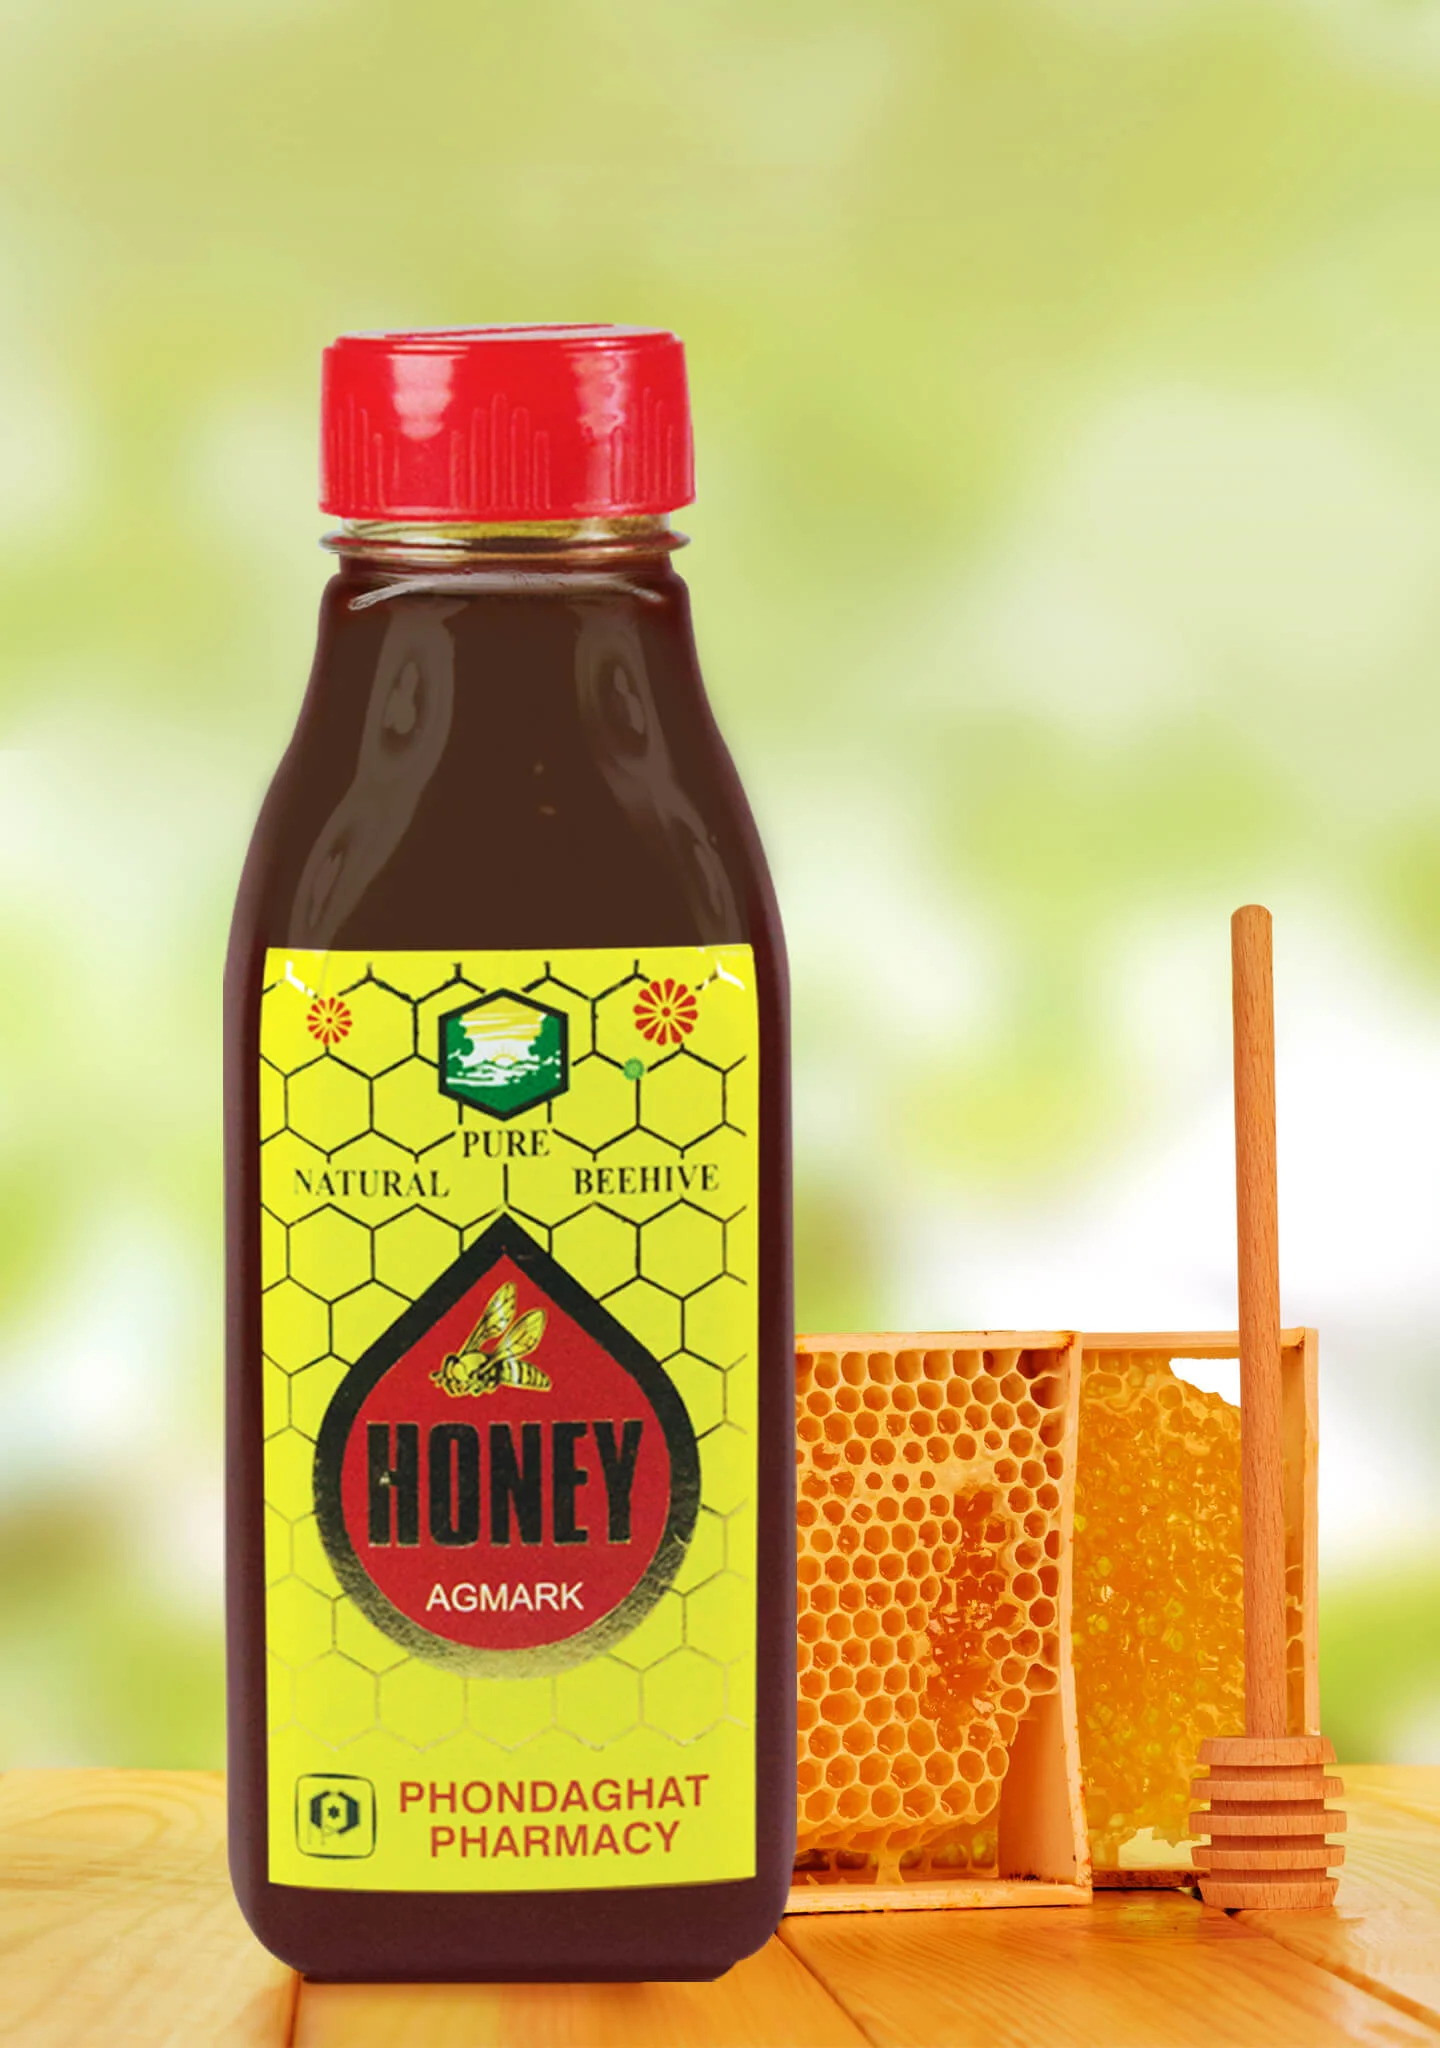 phondaghat honey 1 kg upto 15% off phondaghat pharmacy